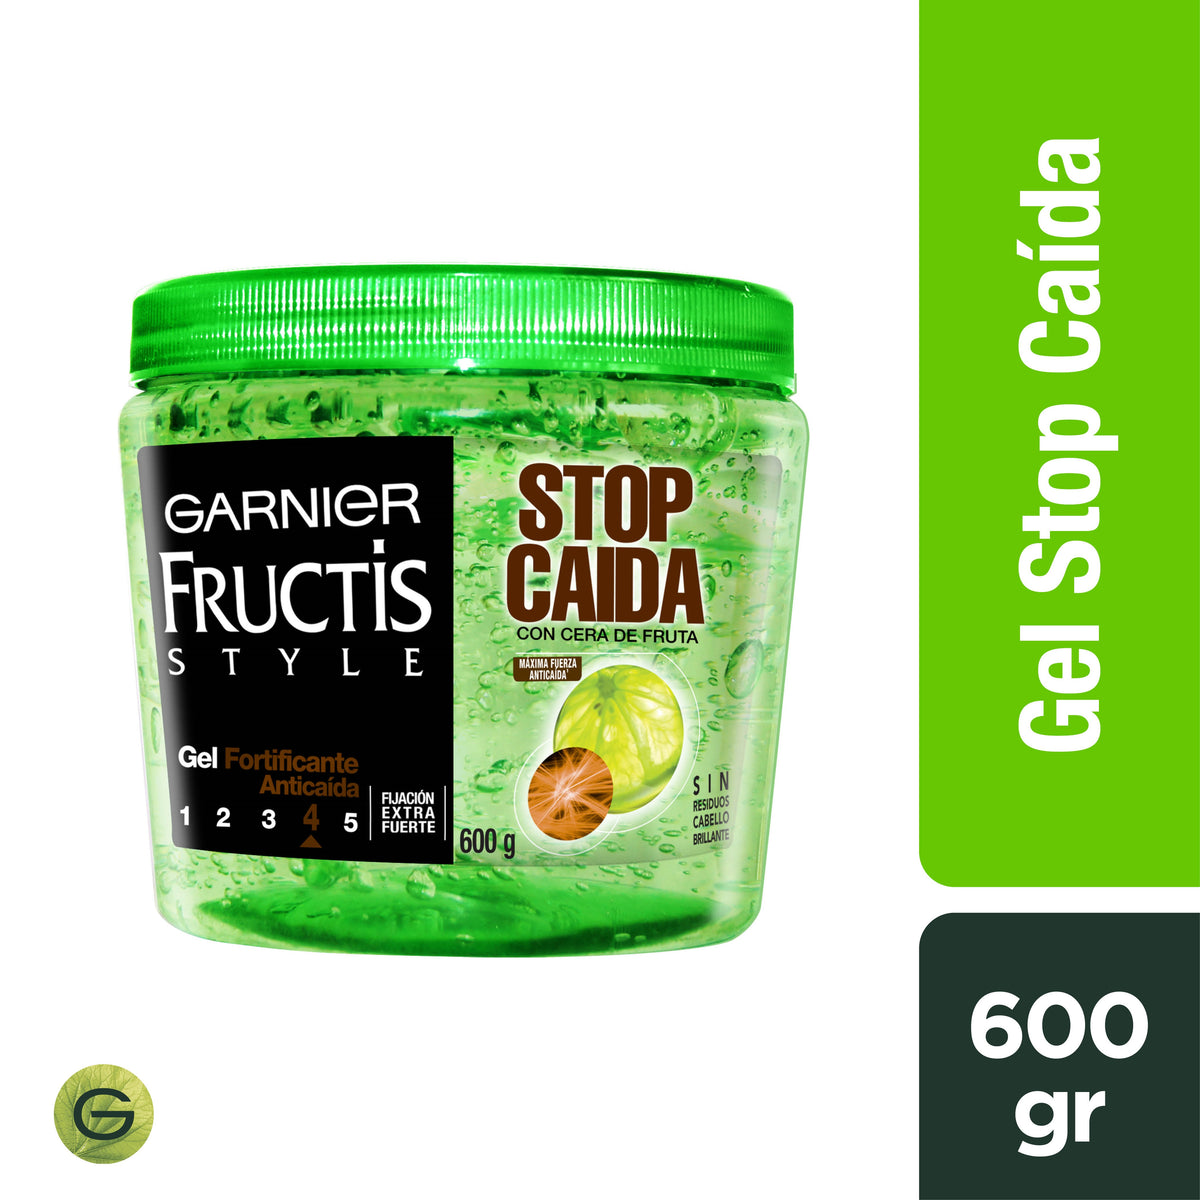 Fructis Style St Caida Tarro 600 gr